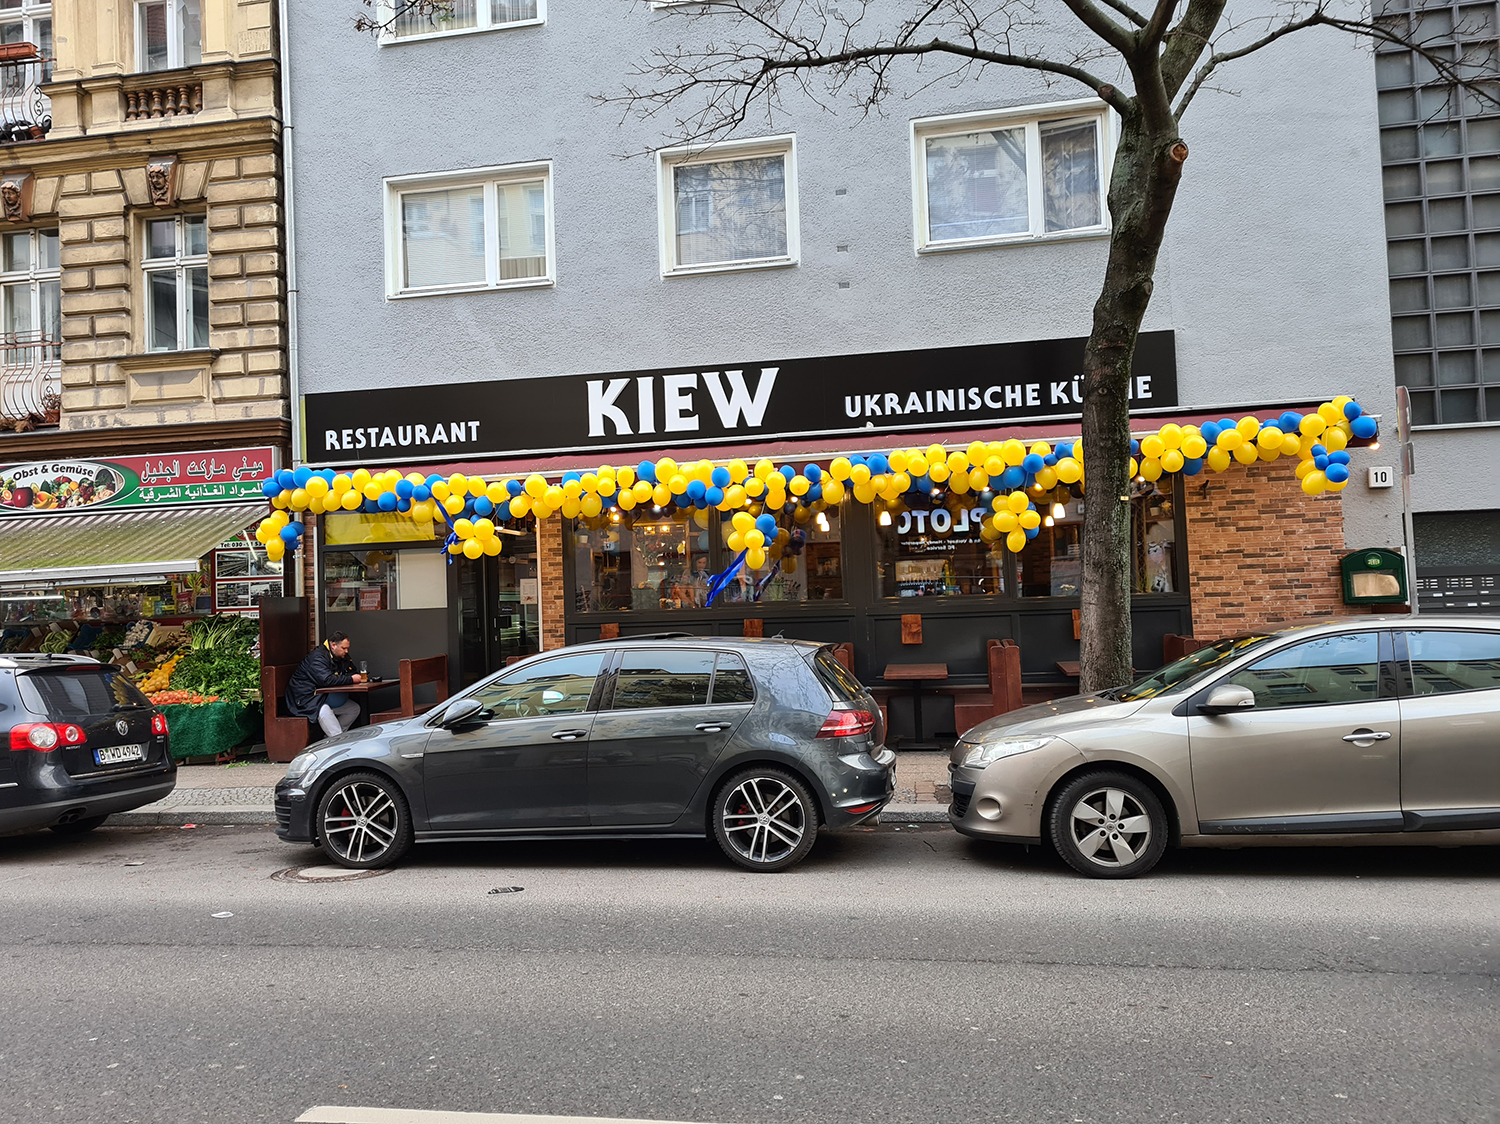 Neueröffnungen im März 2023: Das Kiew serviert ukrainische Küche an der Erkstraße in Berlin Neukölln.